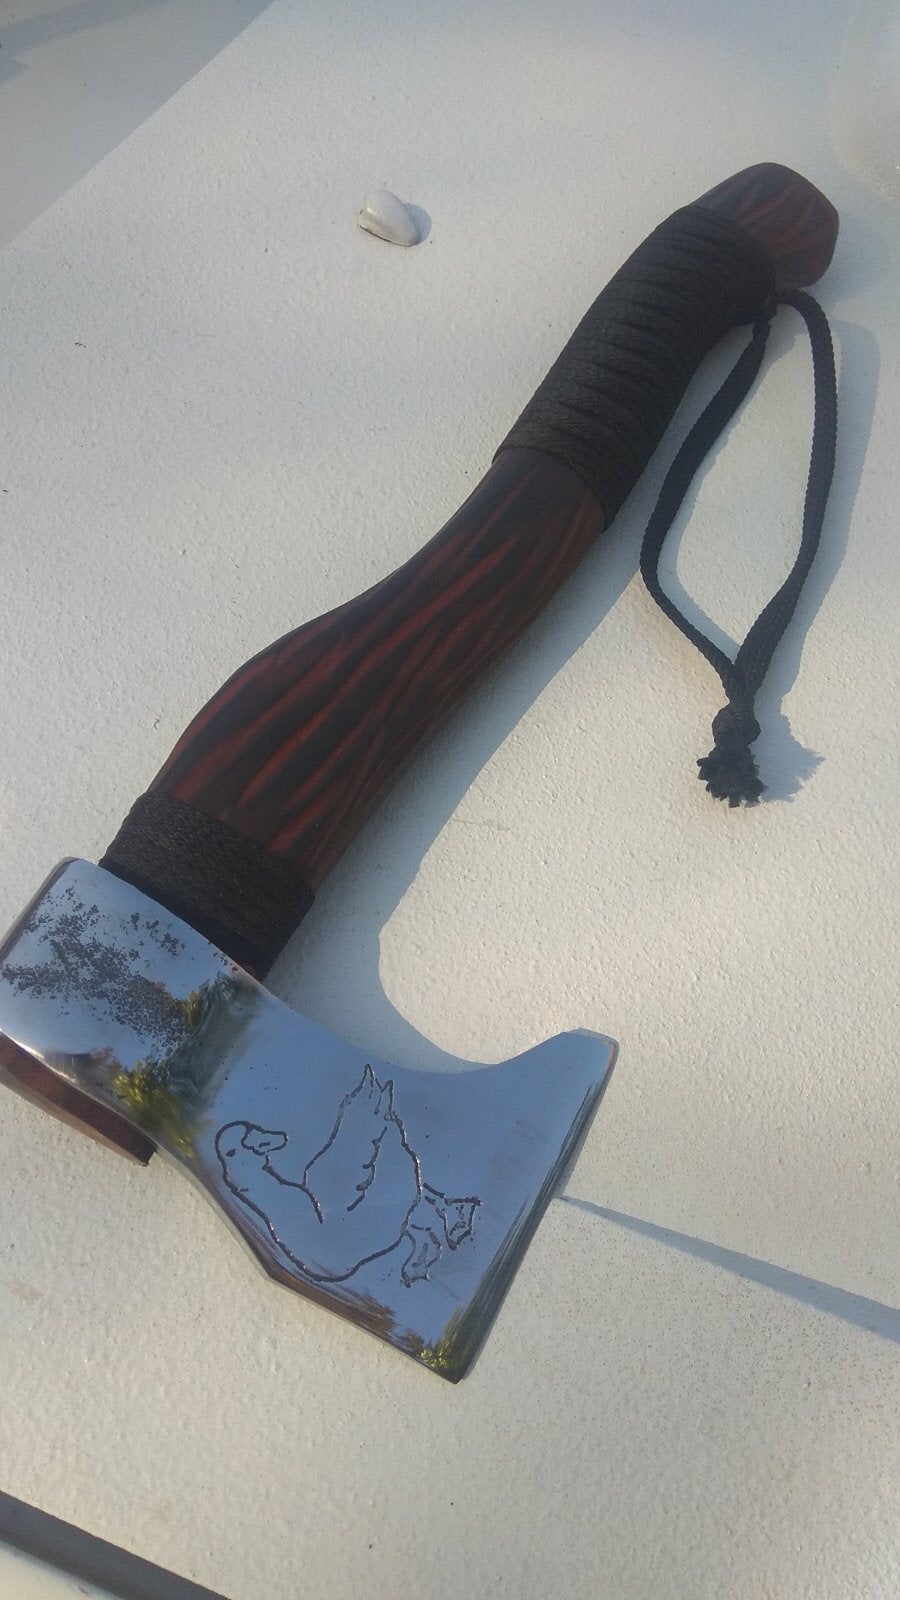 Rustic axe, farmhouse axe, goose, axe gift, viking axe, axe and knife, tomahawk, hatchet, mens gifts,rustic gift,rustic decor,farmhouse gift